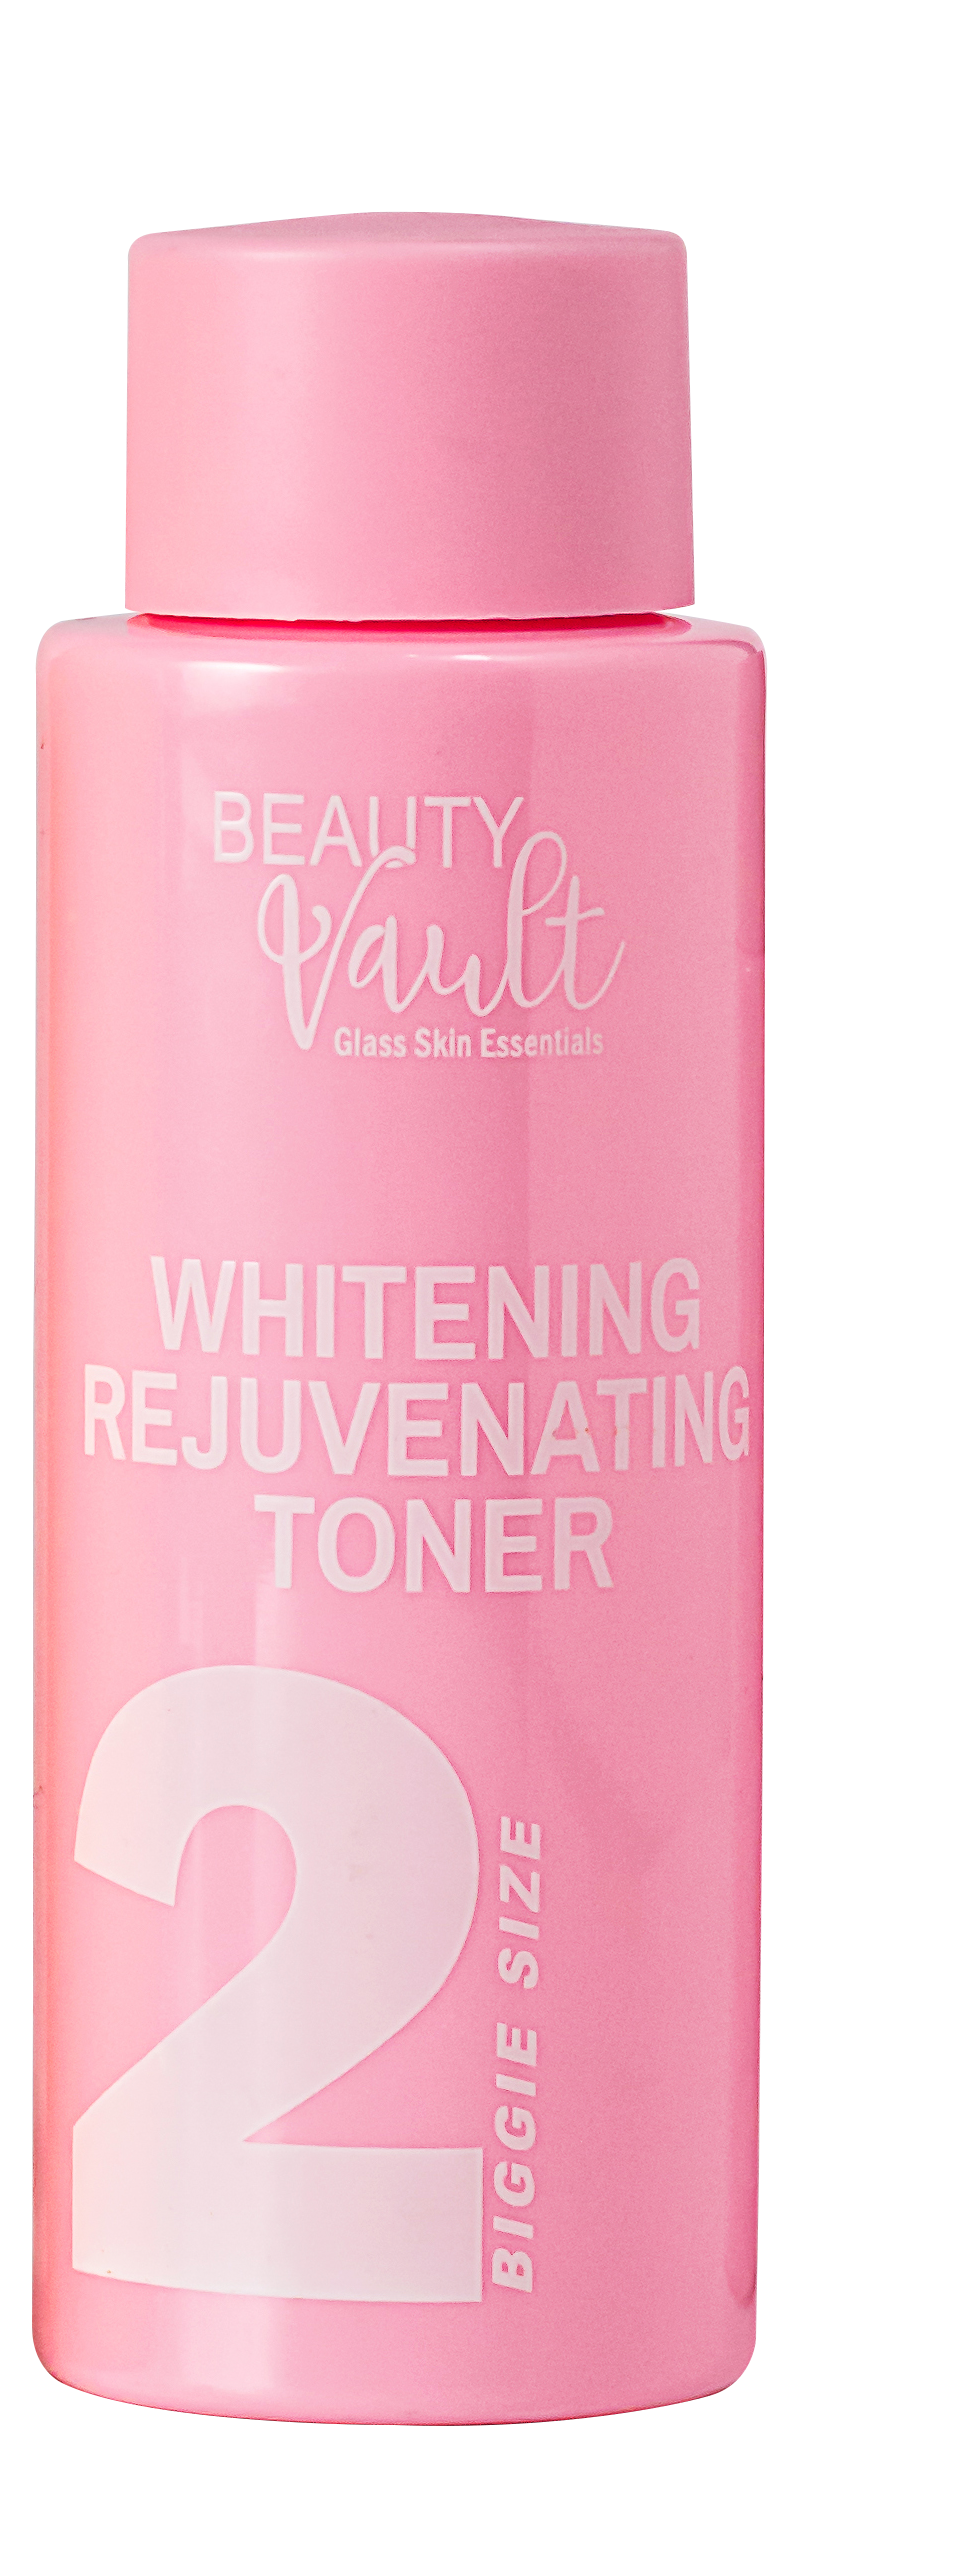 Beauty Vault Whitening Rejuvenating Toner in 120ml